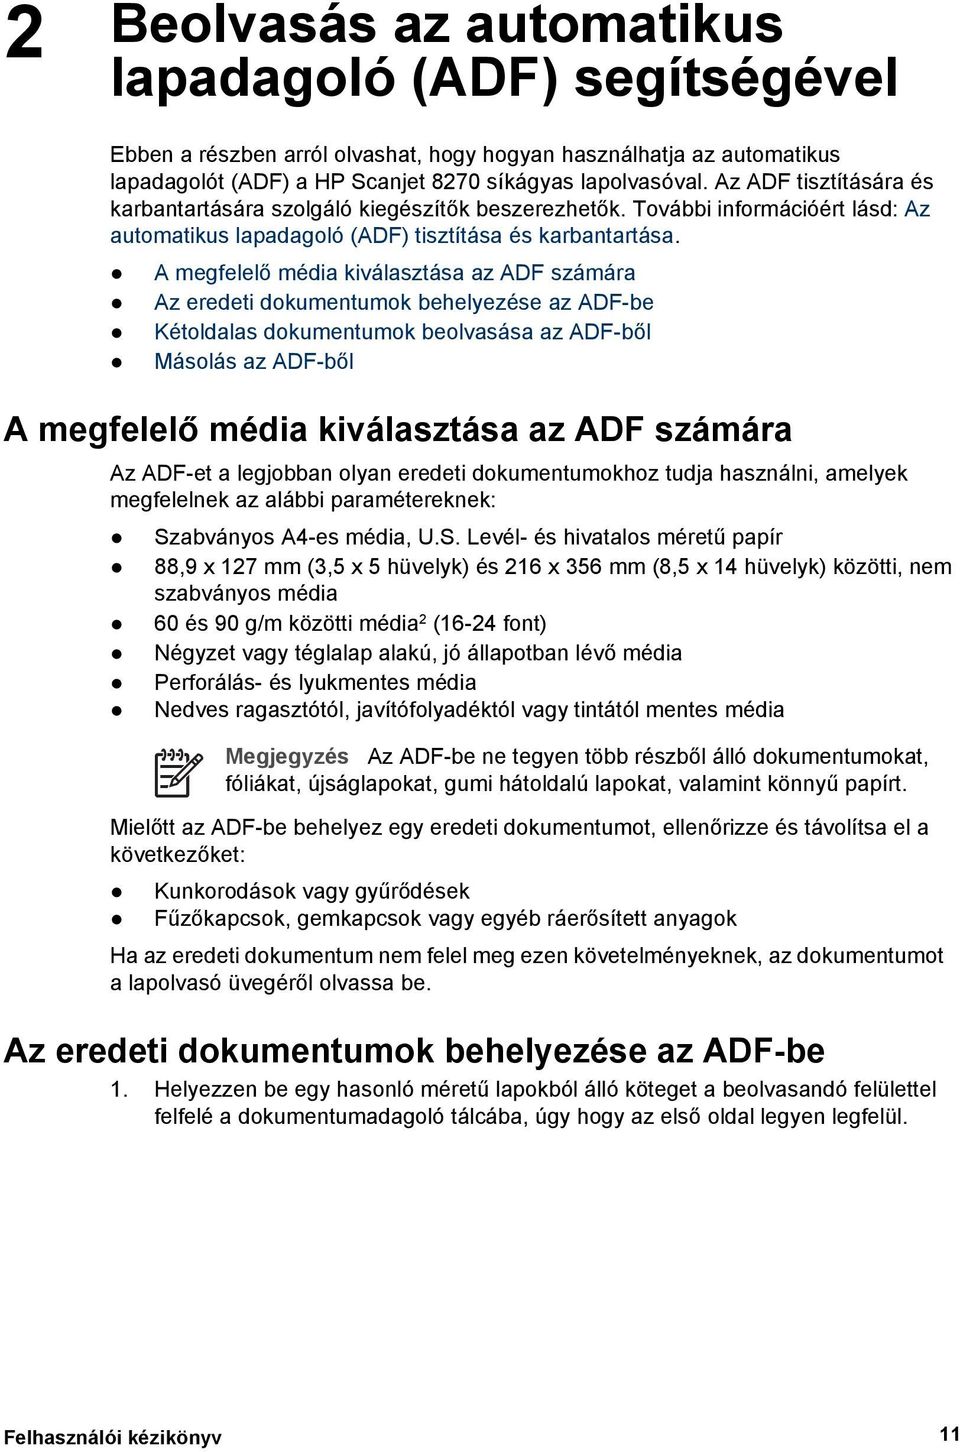 A megfelelő média kiválasztása az ADF számára Az eredeti dokumentumok behelyezése az ADF-be Kétoldalas dokumentumok beolvasása az ADF-ből Másolás az ADF-ből A megfelelő média kiválasztása az ADF